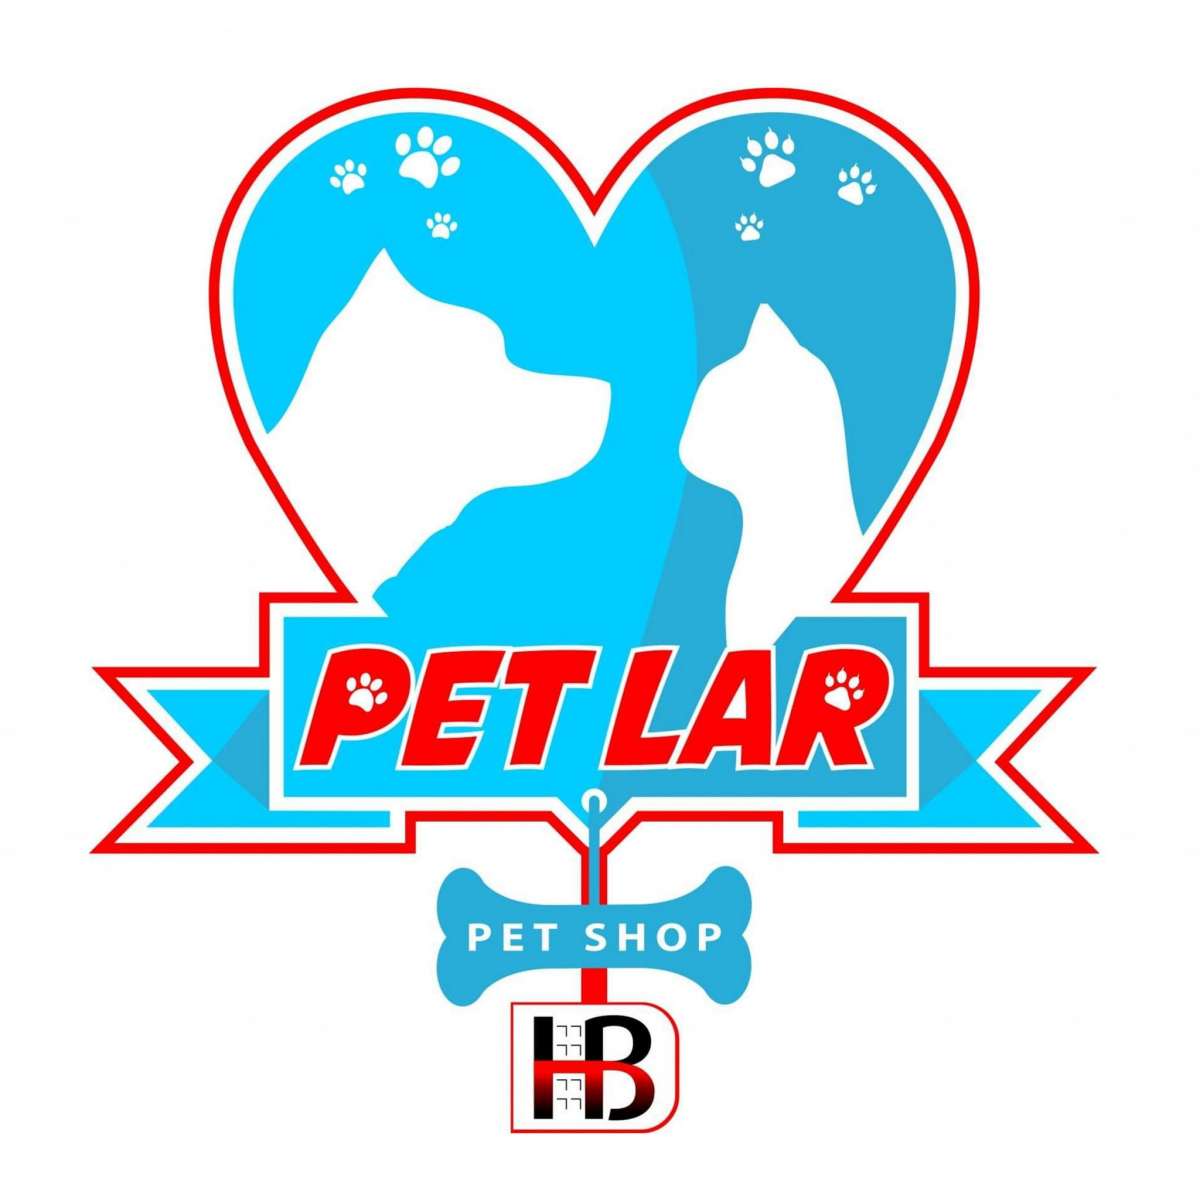 Pet Lar - Estética animal, Creche canina e Pet shop - Porto - Banhos e Tosquias para Animais